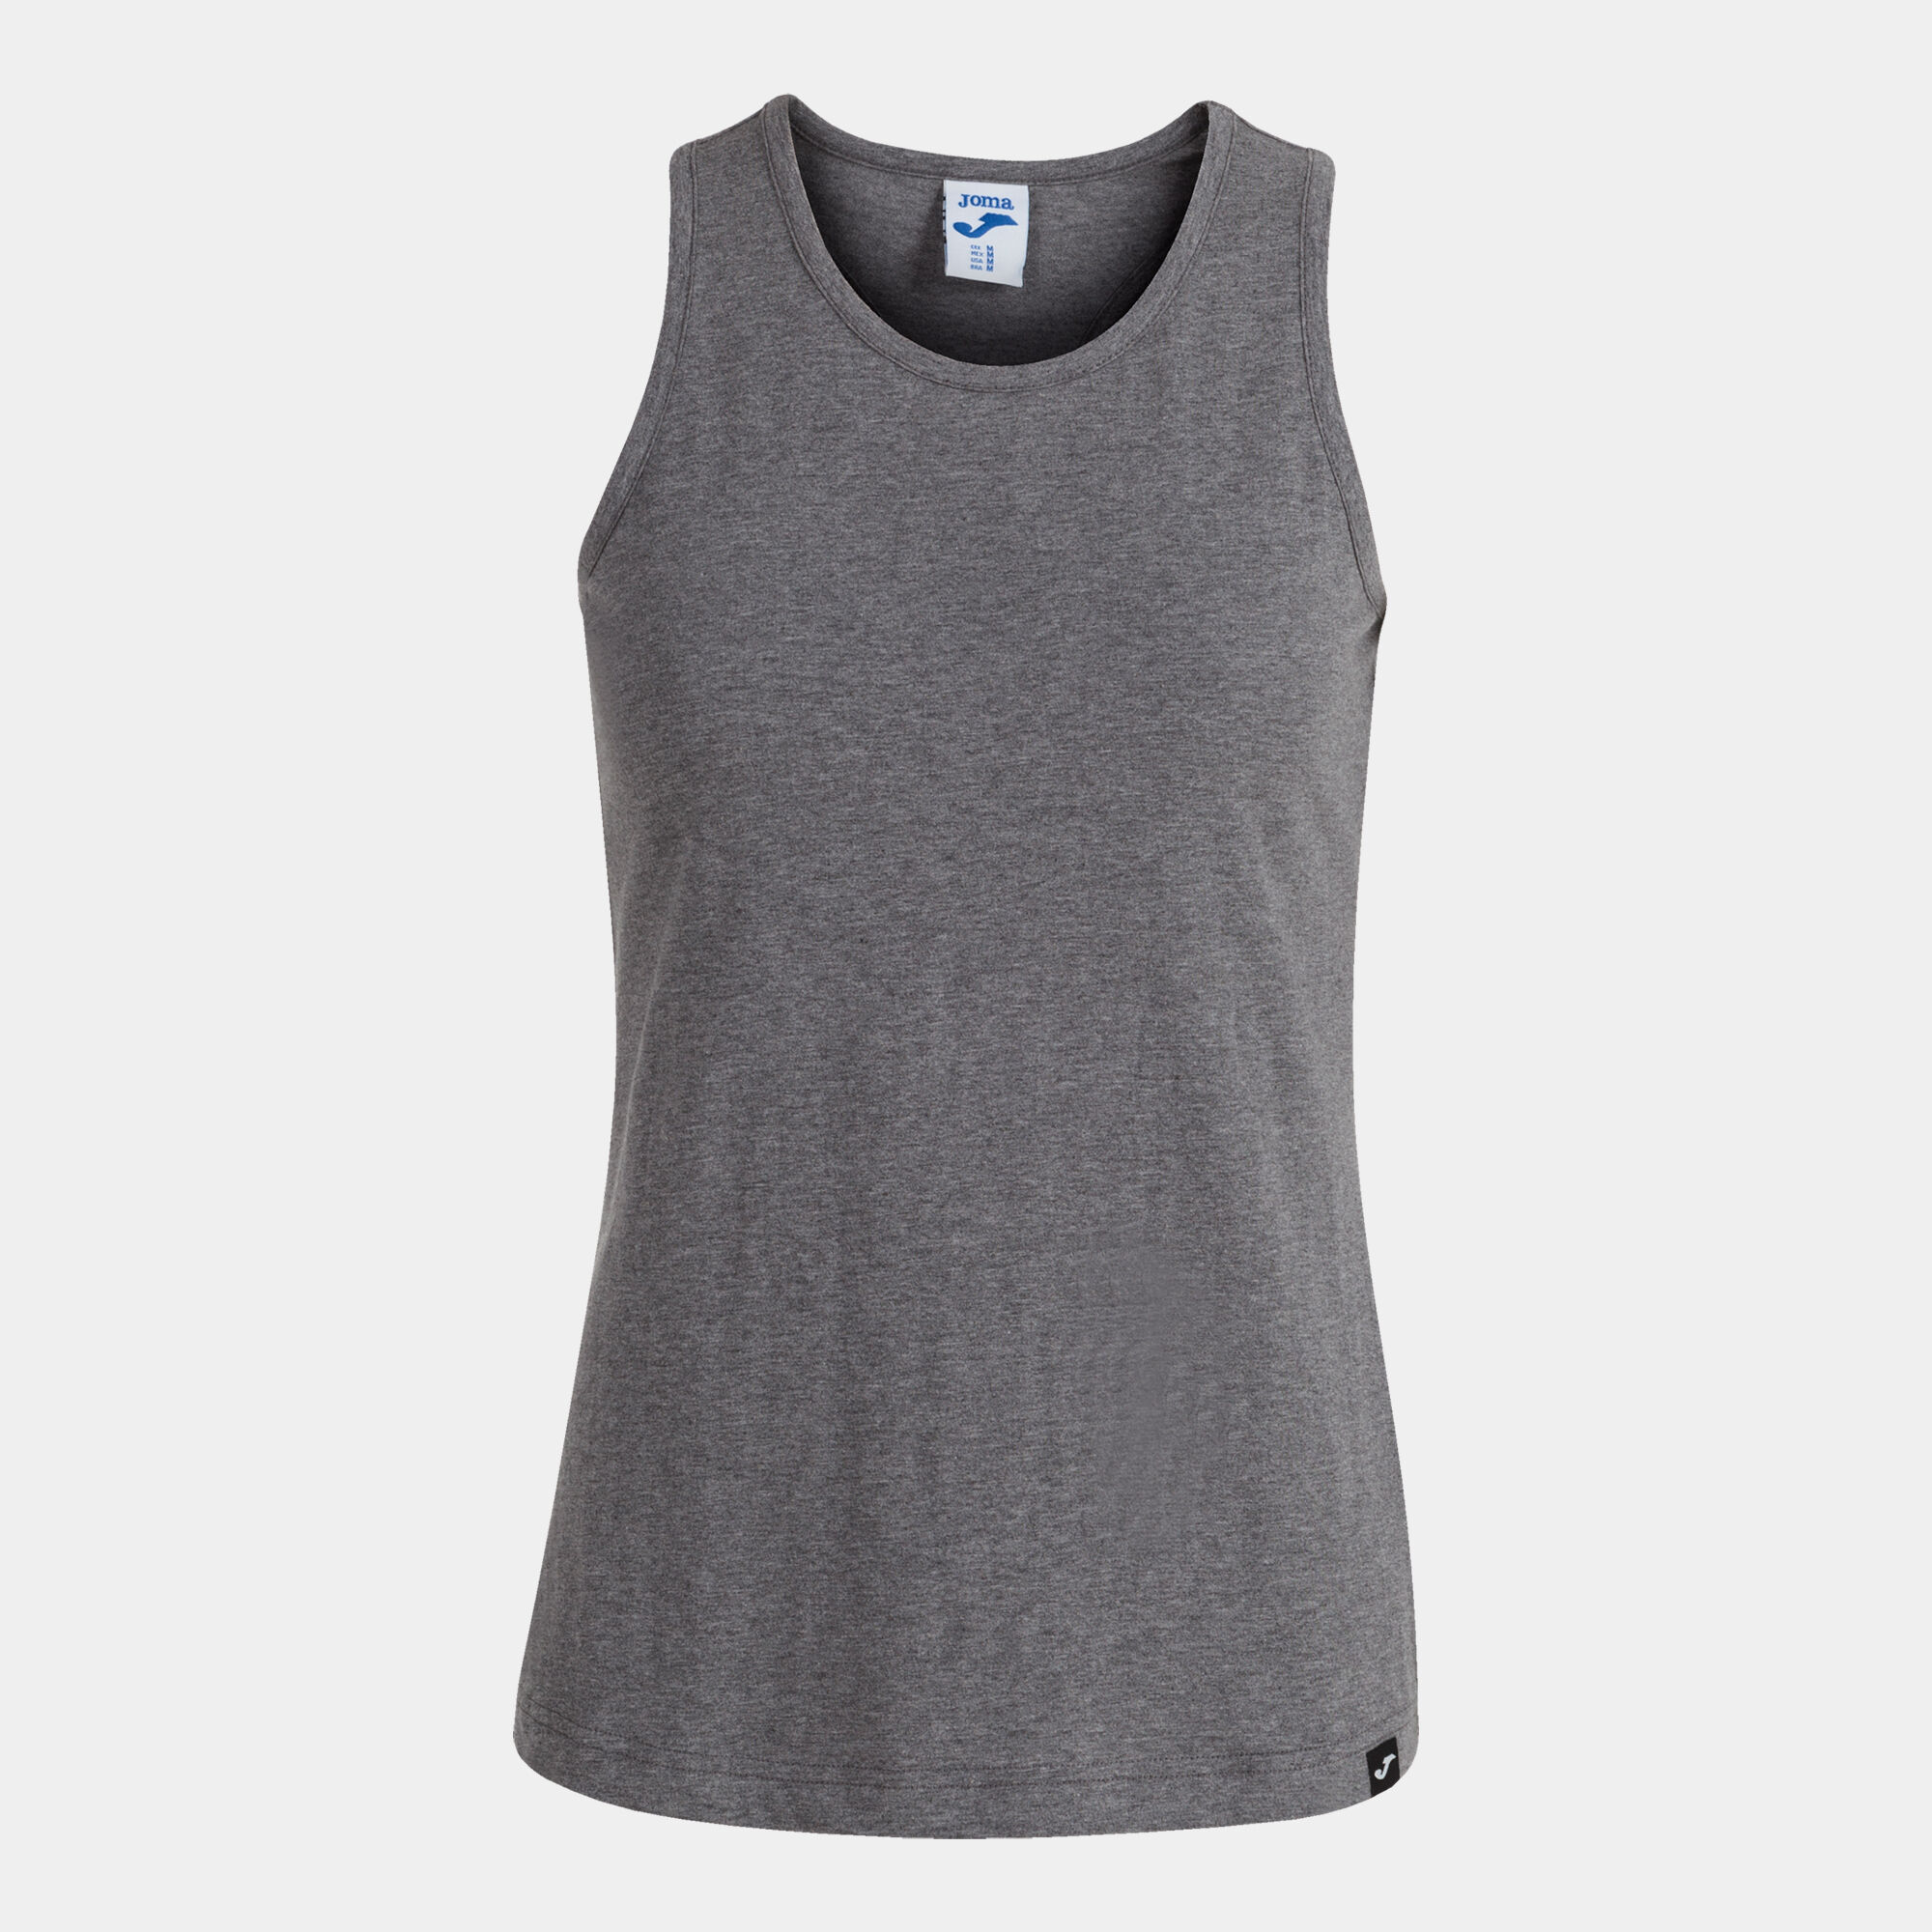 Camiseta tirantes mujer Oasis gris melange